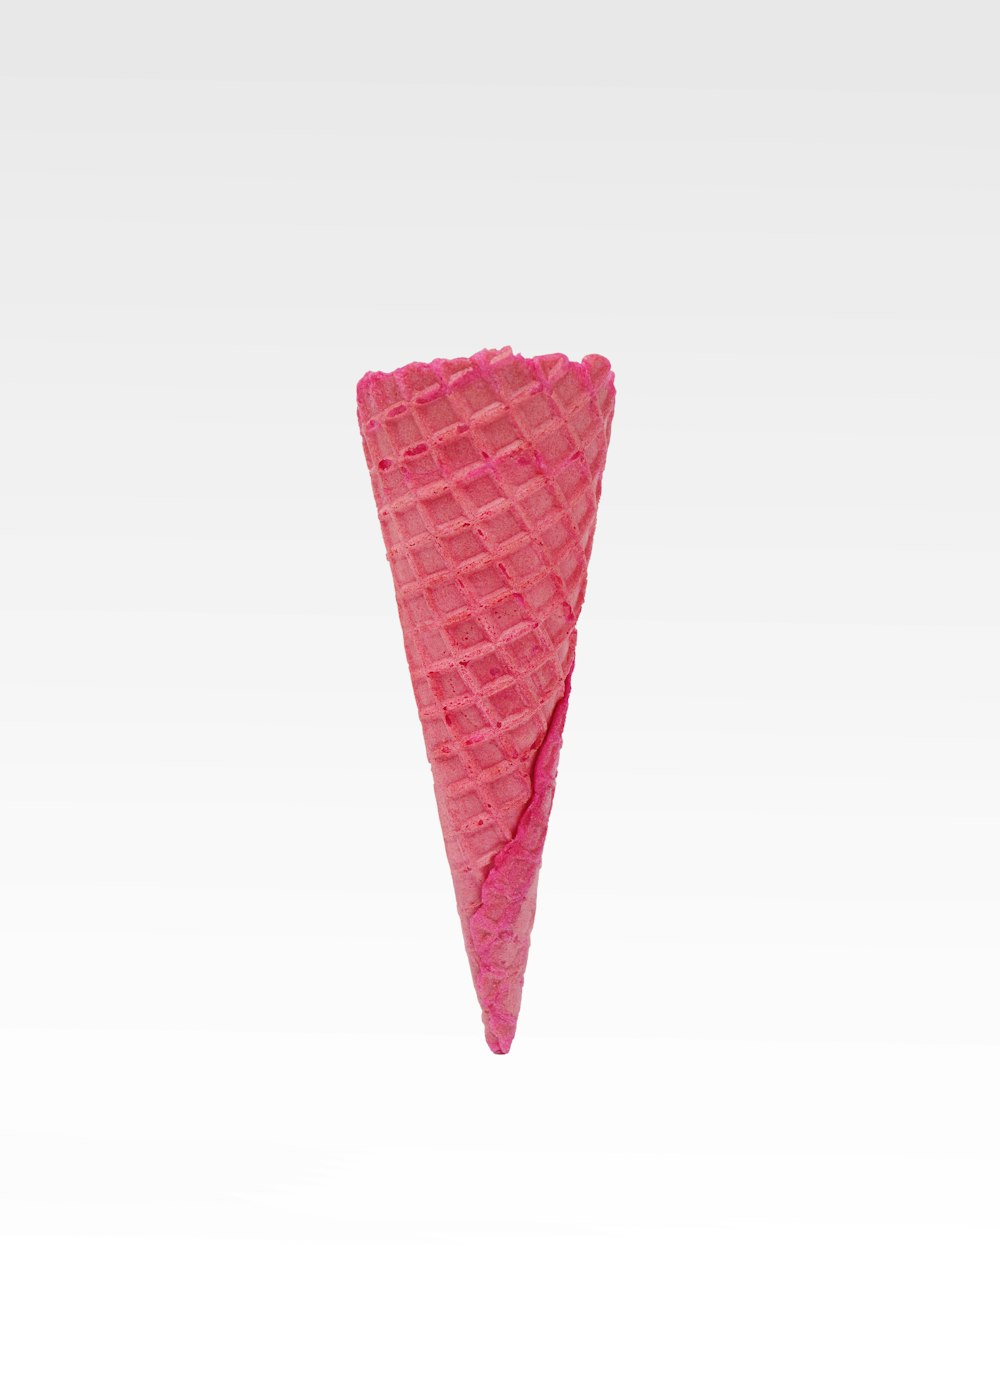 Helado de cono rosa sobre fondo blanco